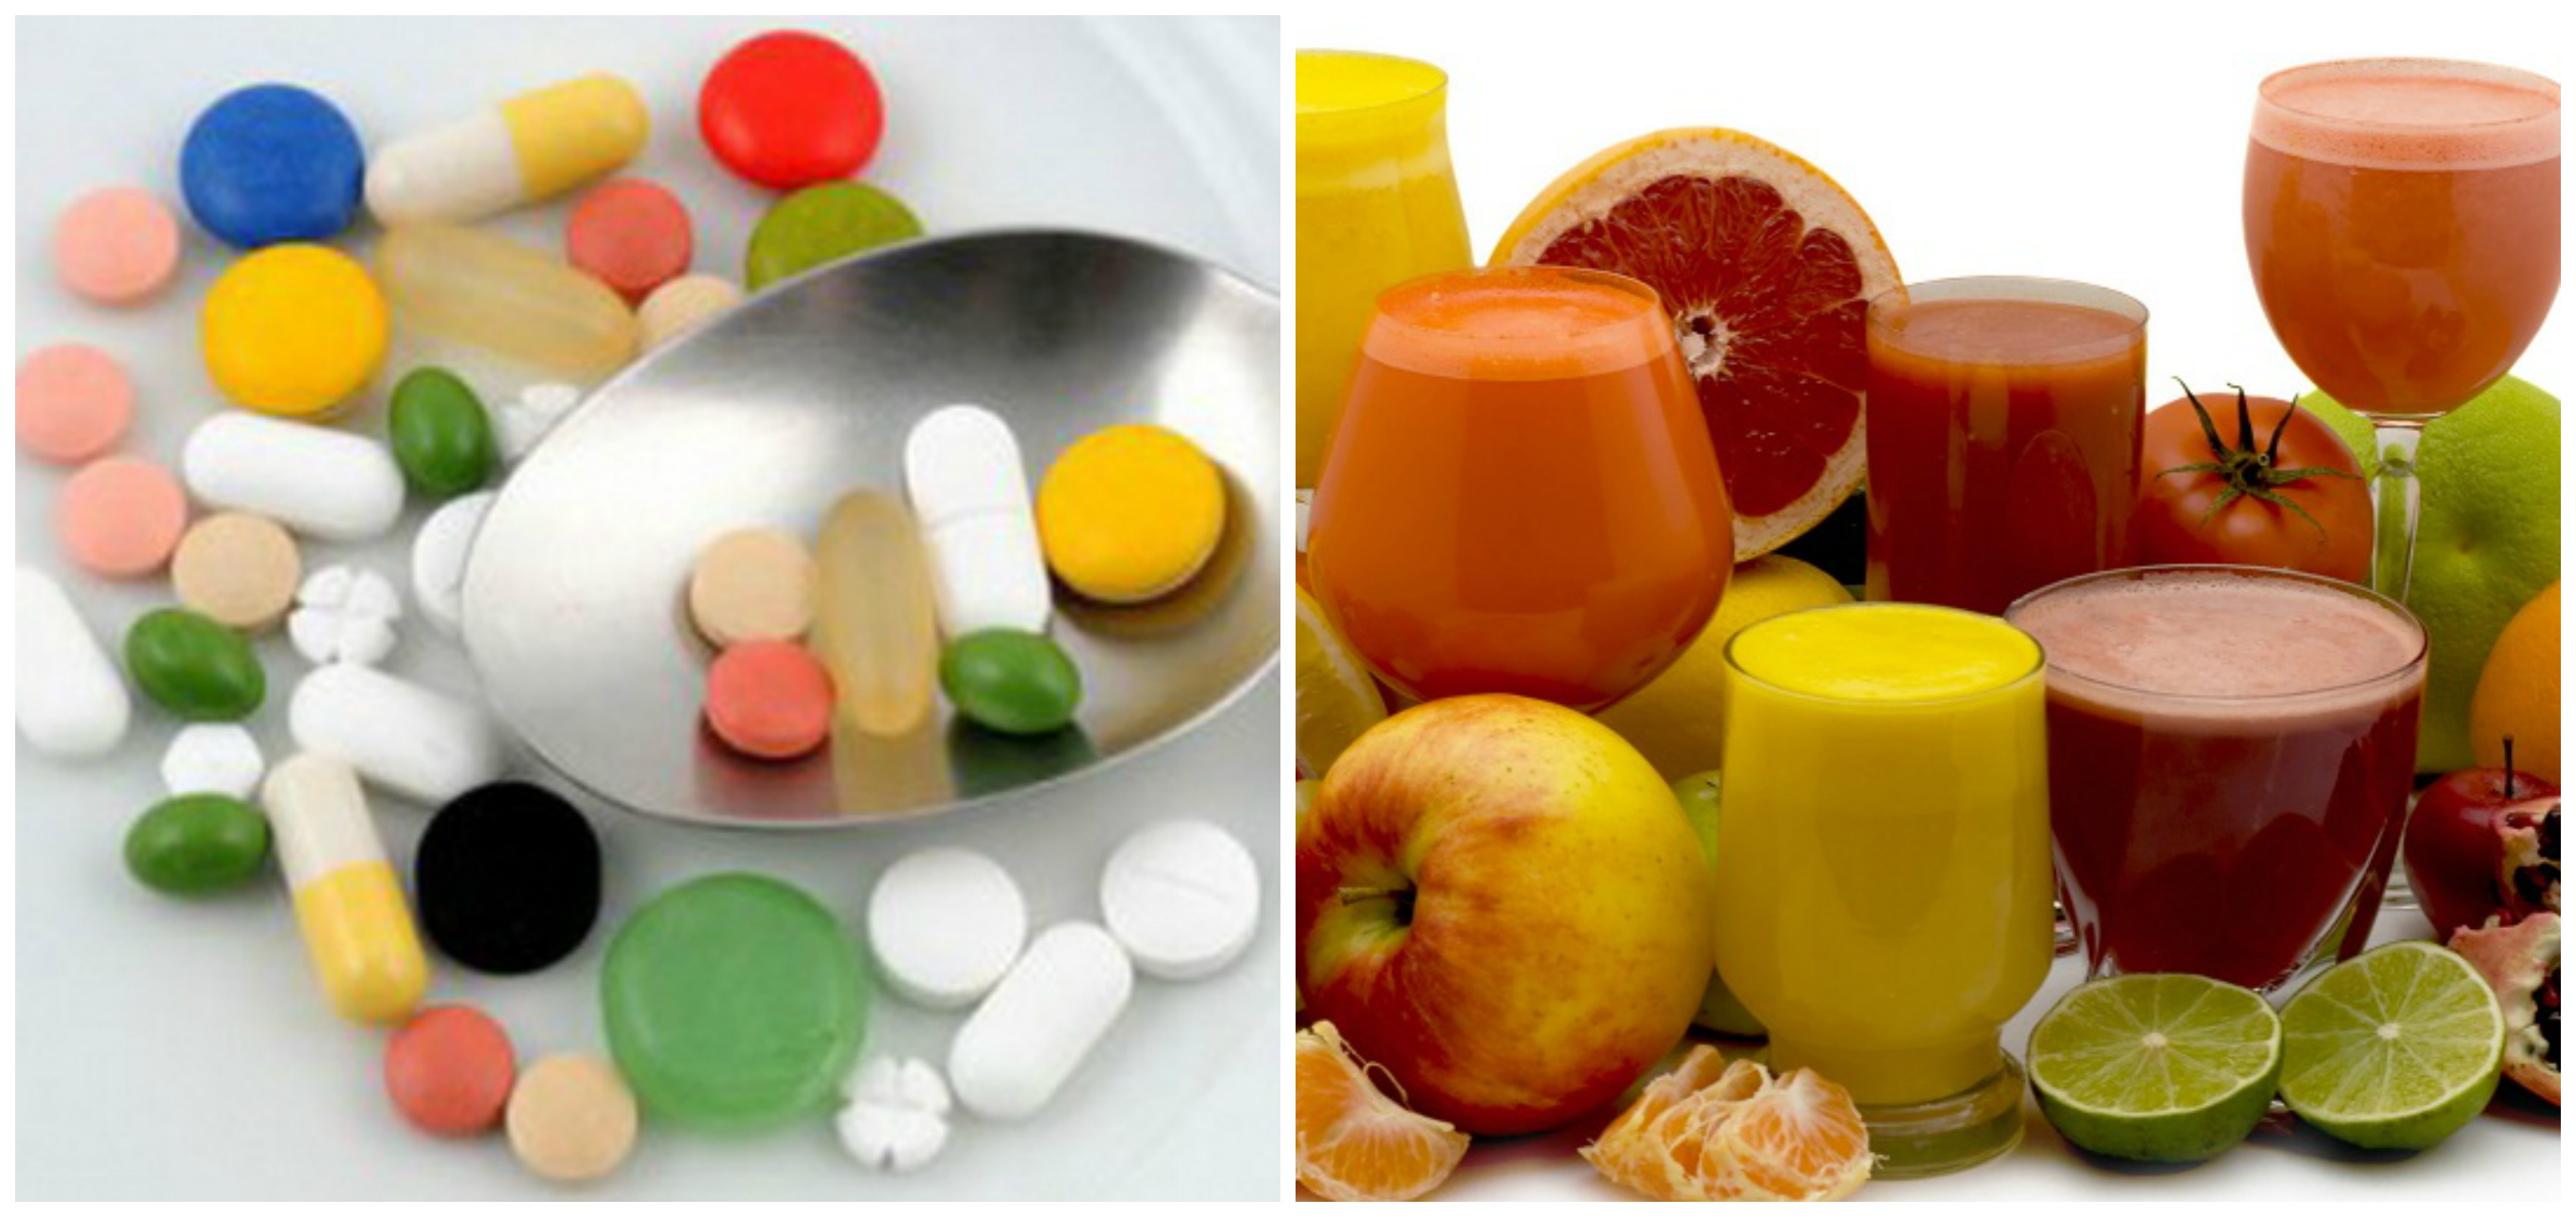 Еда и лекарства — опасные сочетания